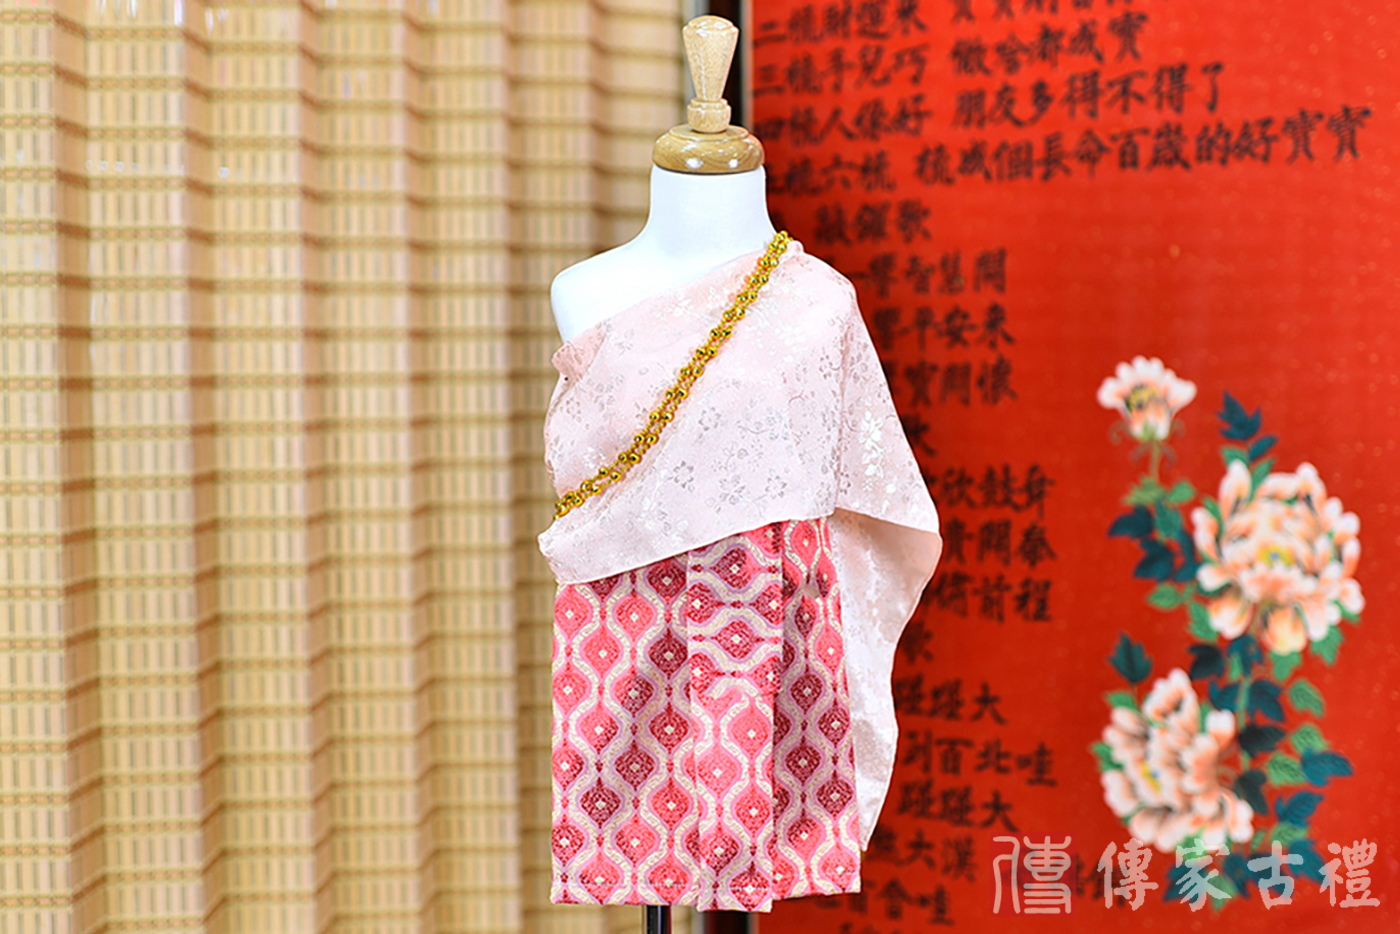 2024-02-22小孩皇室泰服古裝禮服。淡粉色的披肩與紅色呈現波浪狀和幾何圖形裙裝的泰式古裝禮服。照片集